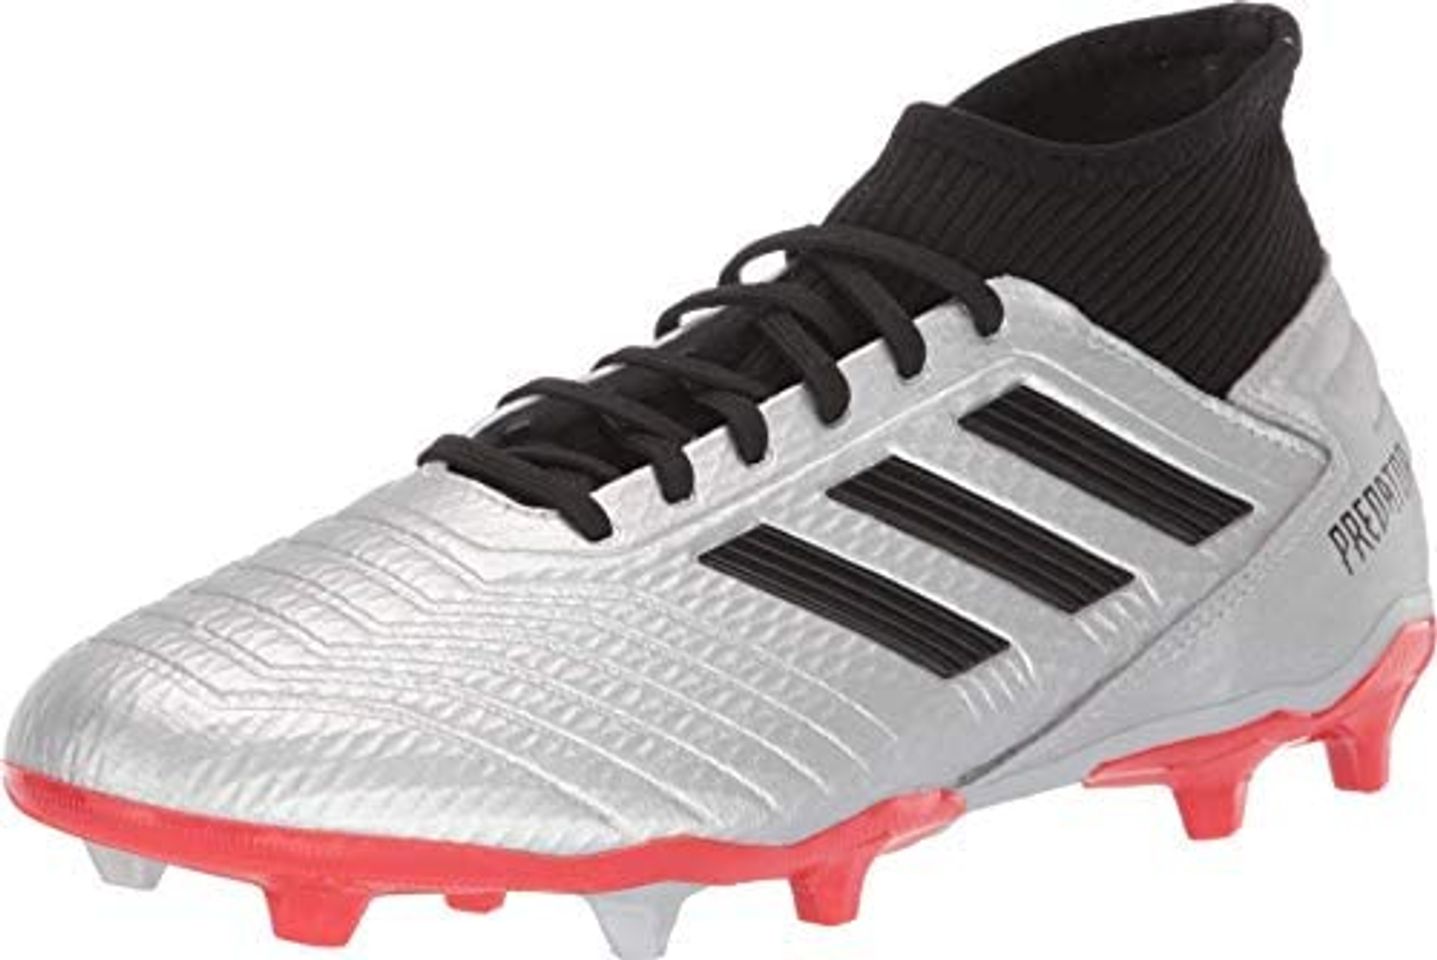 Adidas Men’s Predator 19.3 Firm Ground Soccer Shoe Review